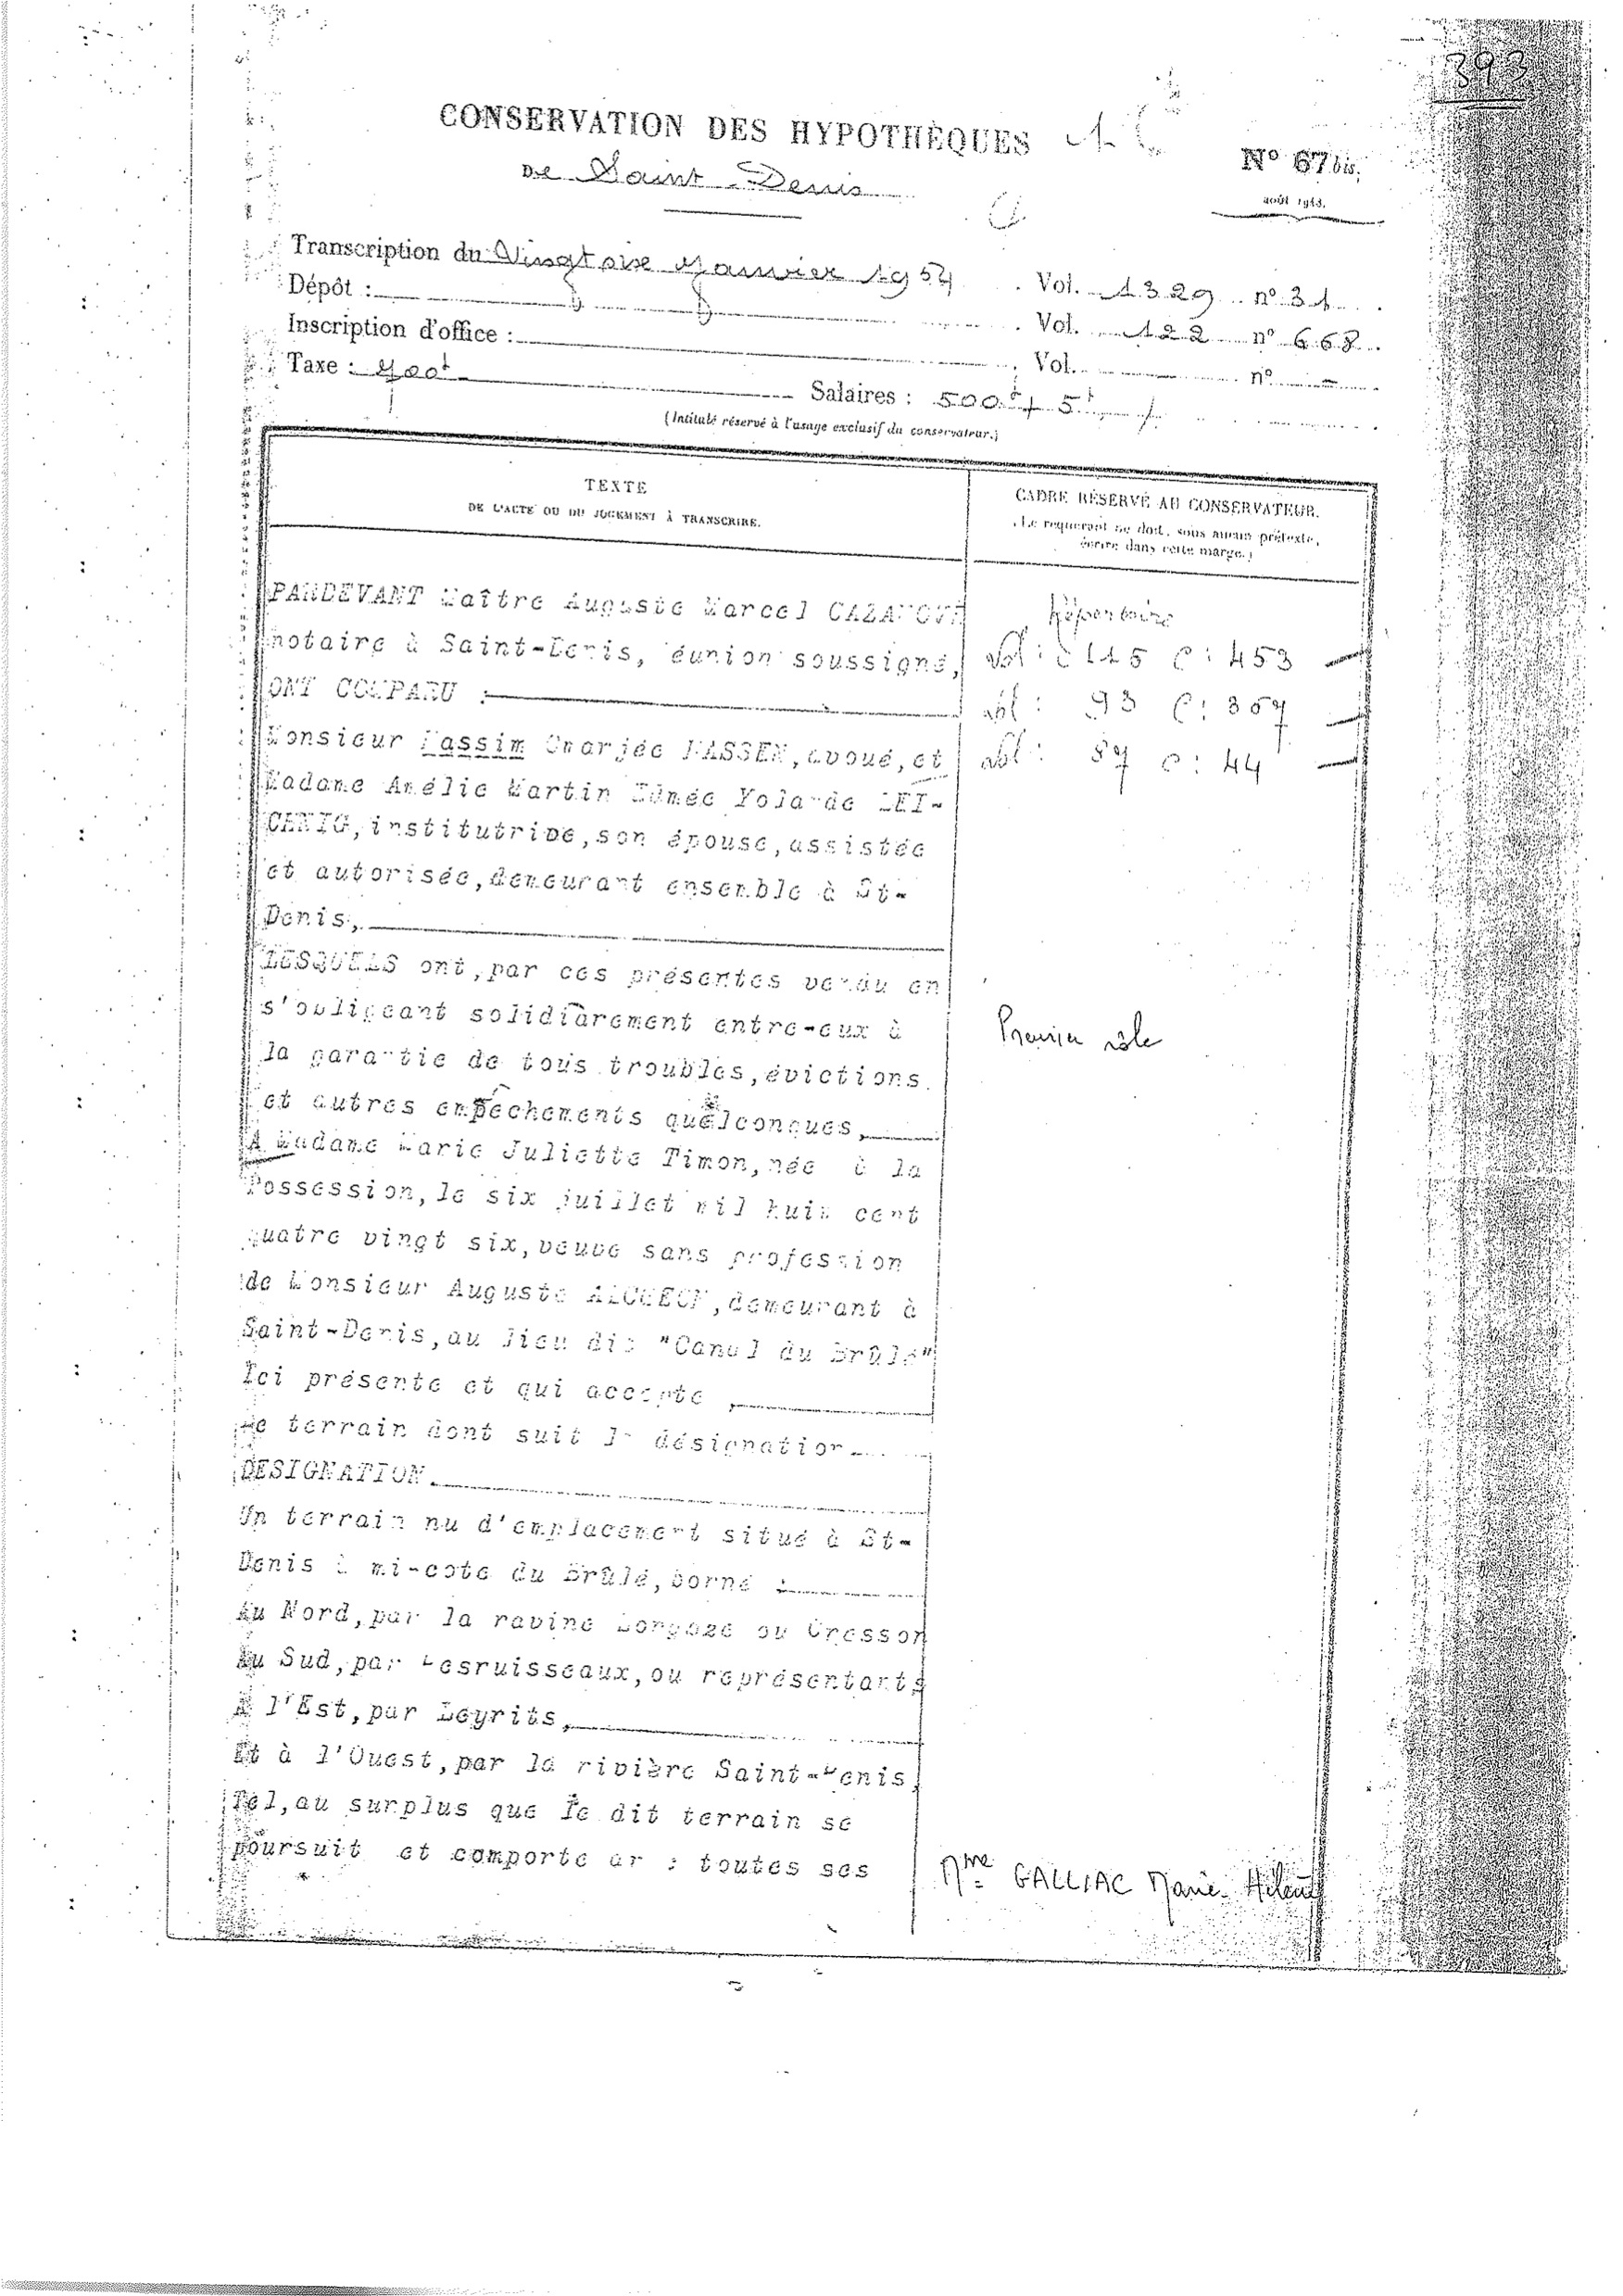 Un extrait du document conservé aux hypothèques et retraçant la propriété de Mme Timon, datant de 1954 !